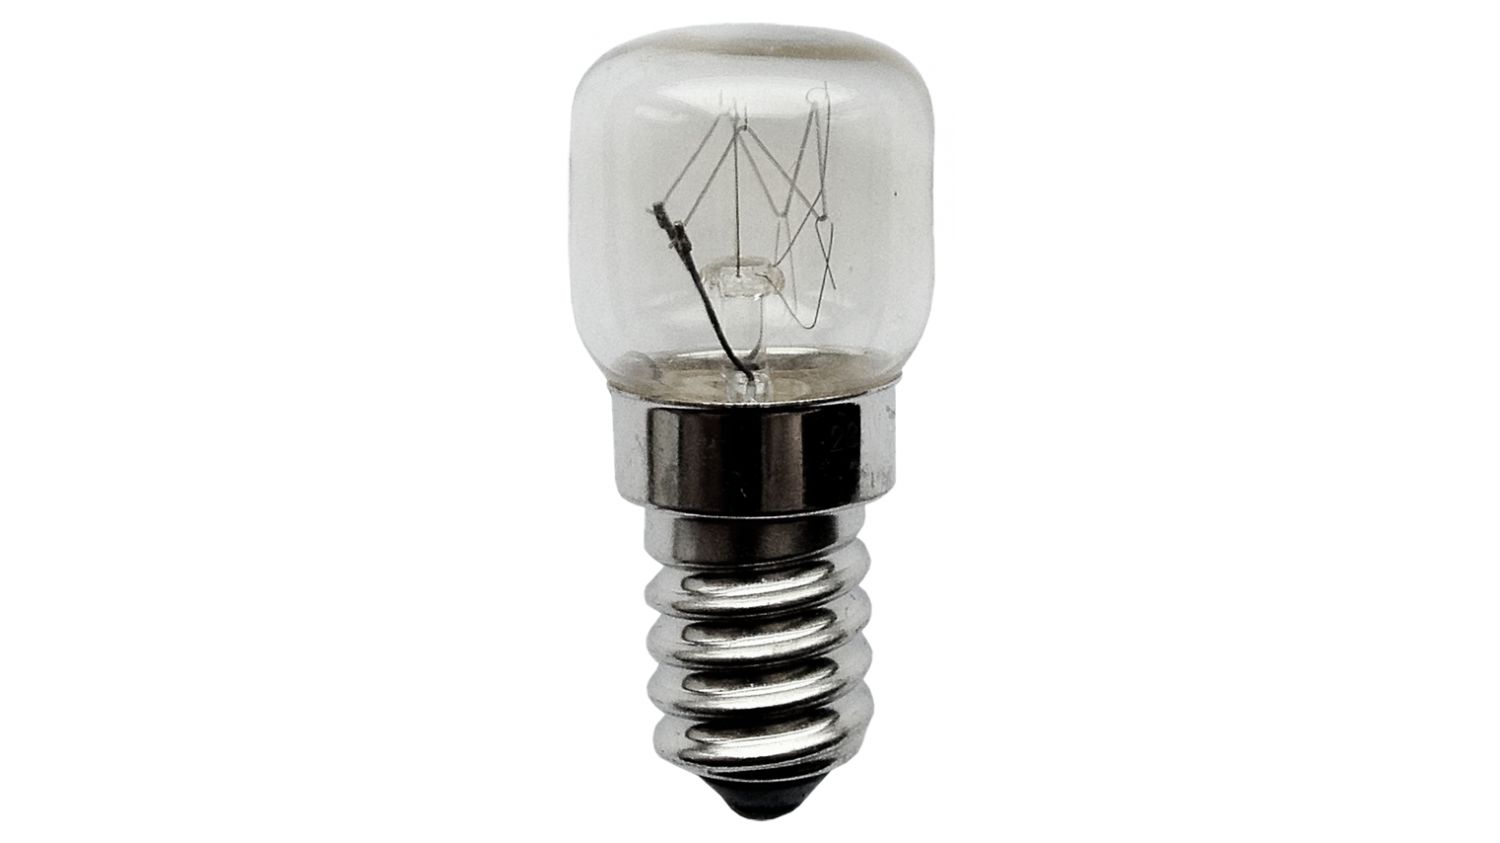 144831100: 12v 10w E14 pygmy light bulb, SES, small screw cap, NOT UK MAINS  240v